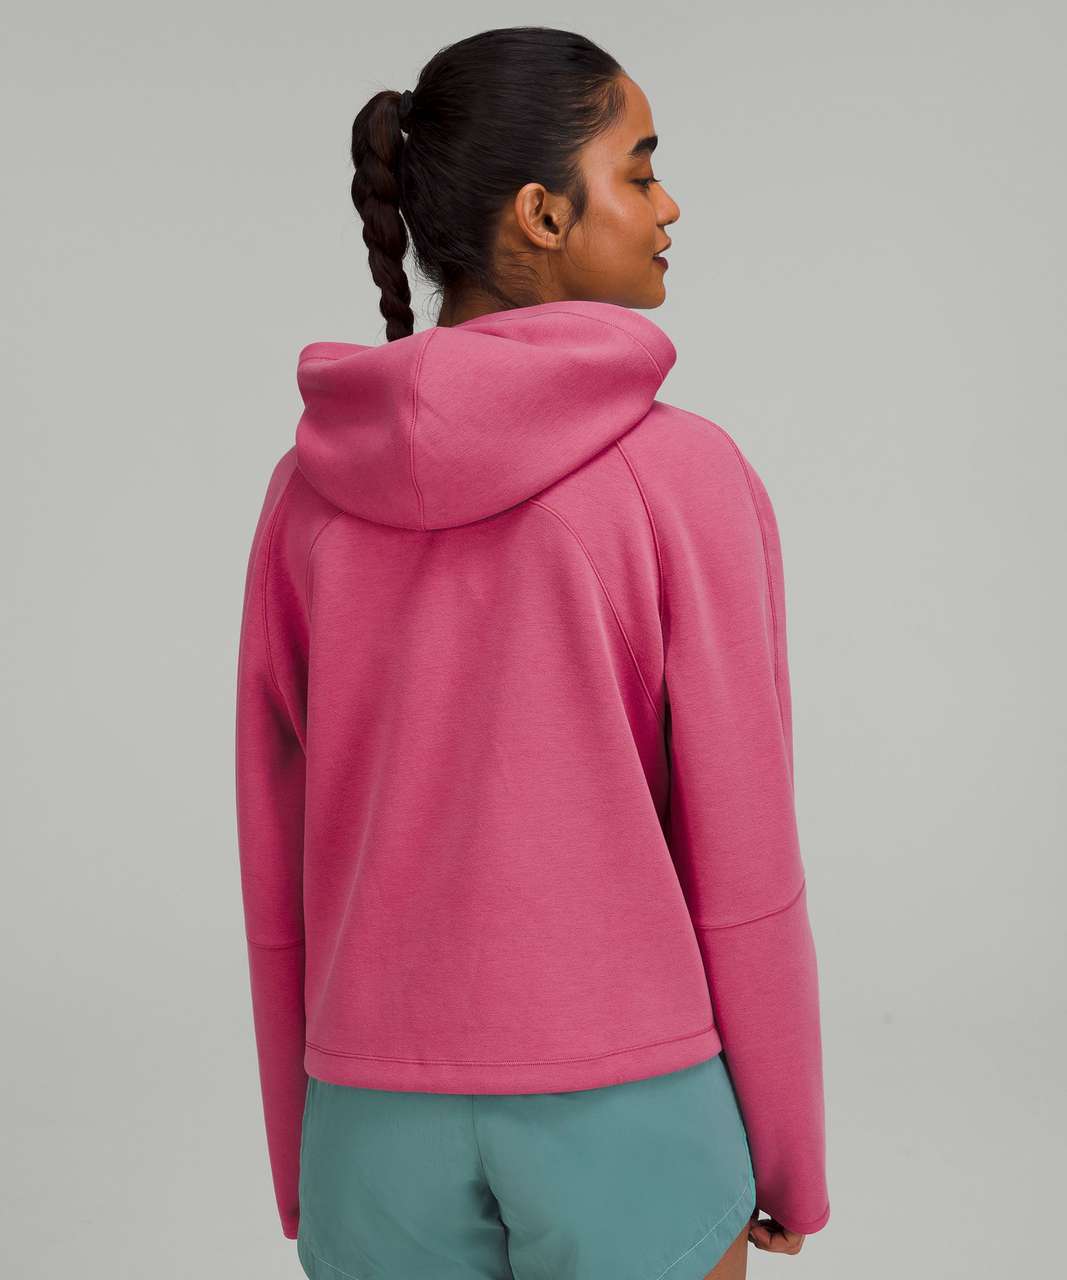 Lululemon AirWrap Modal Pullover Hoodie - Pink Lychee